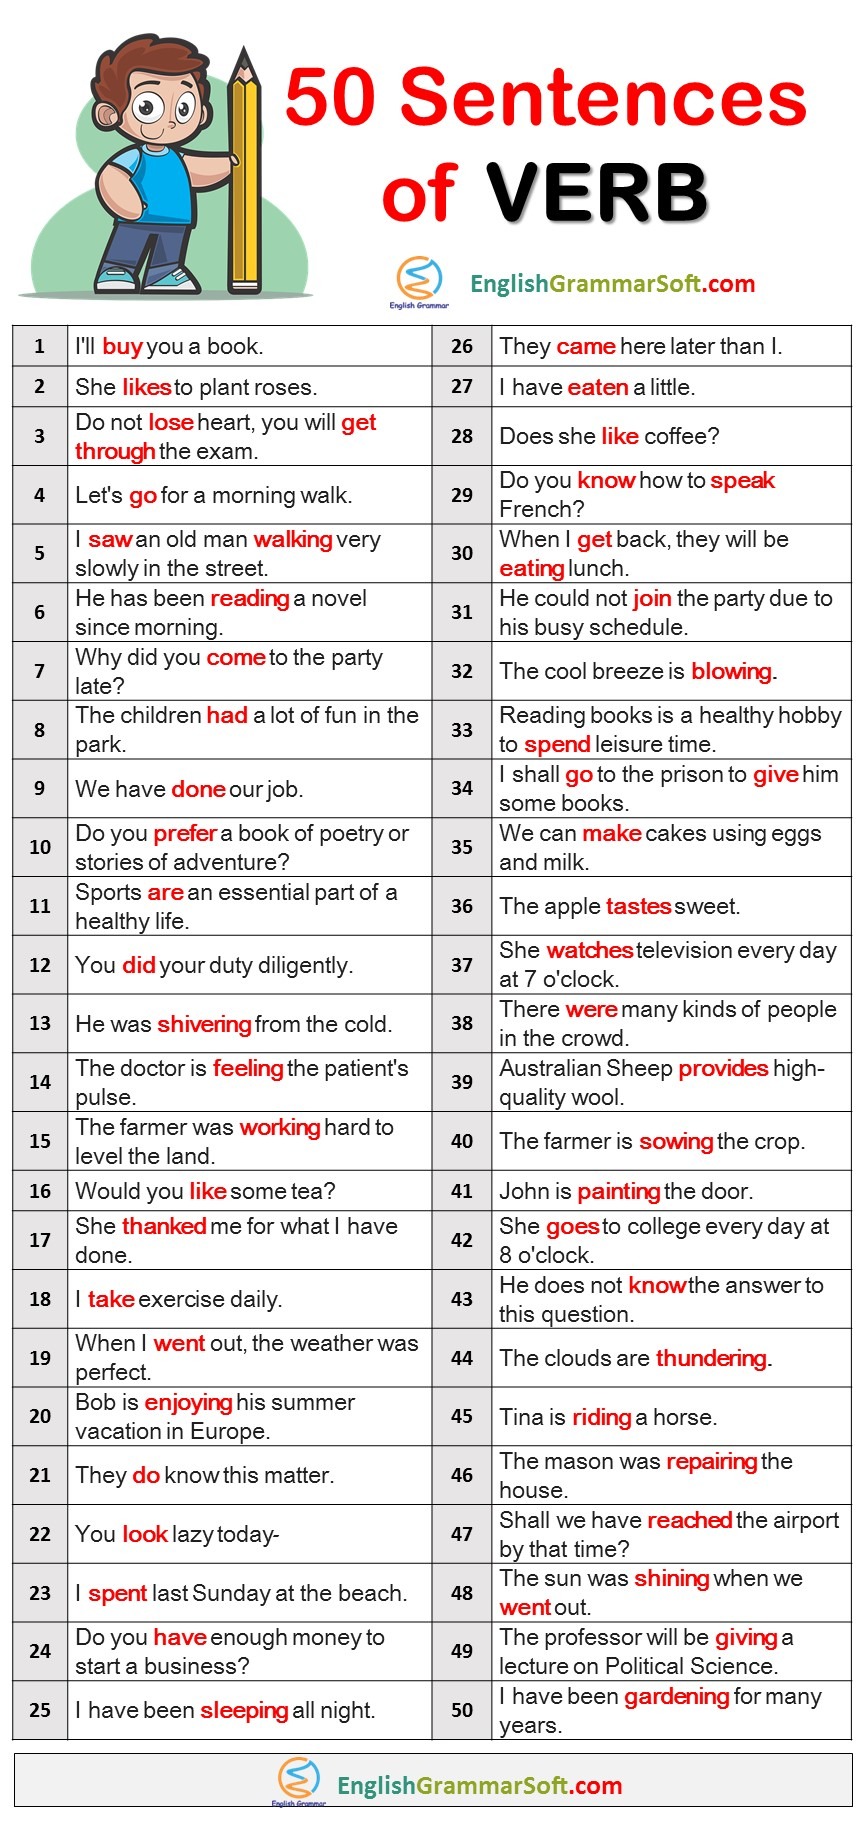 50 Sentences of Verbs